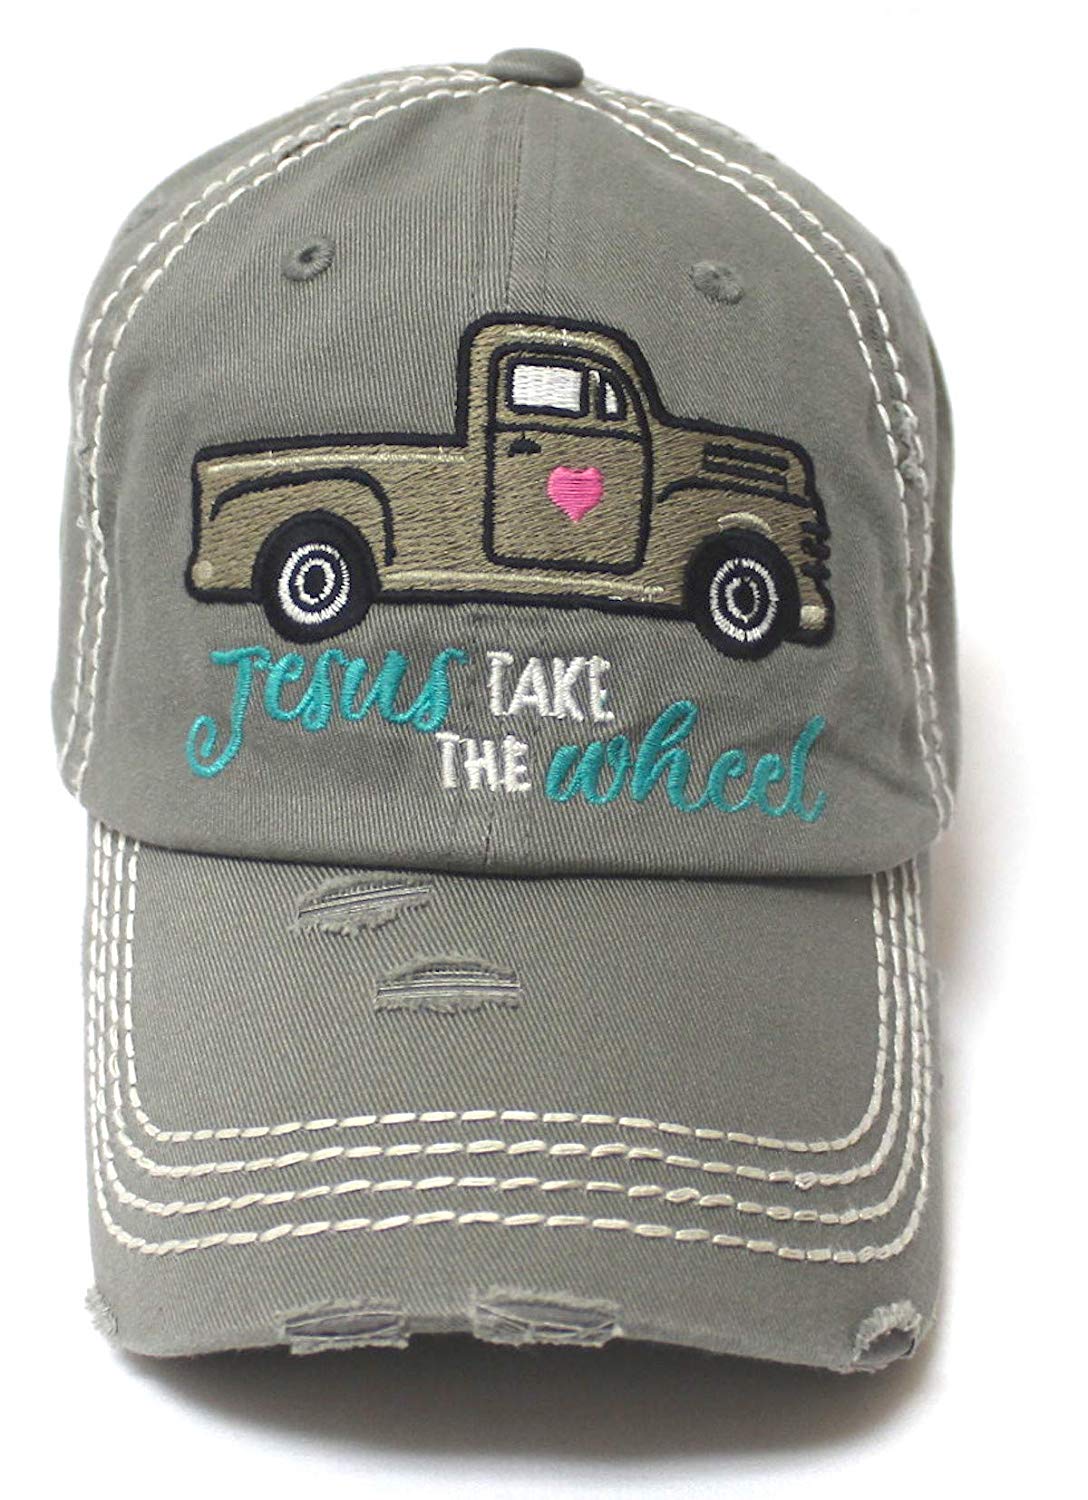 CAPS 'N VINTAGE Women's Camping Cap Jesus Take The Wheel Truck Heart Embroidery Hat, Slate Grey - Caps 'N Vintage 